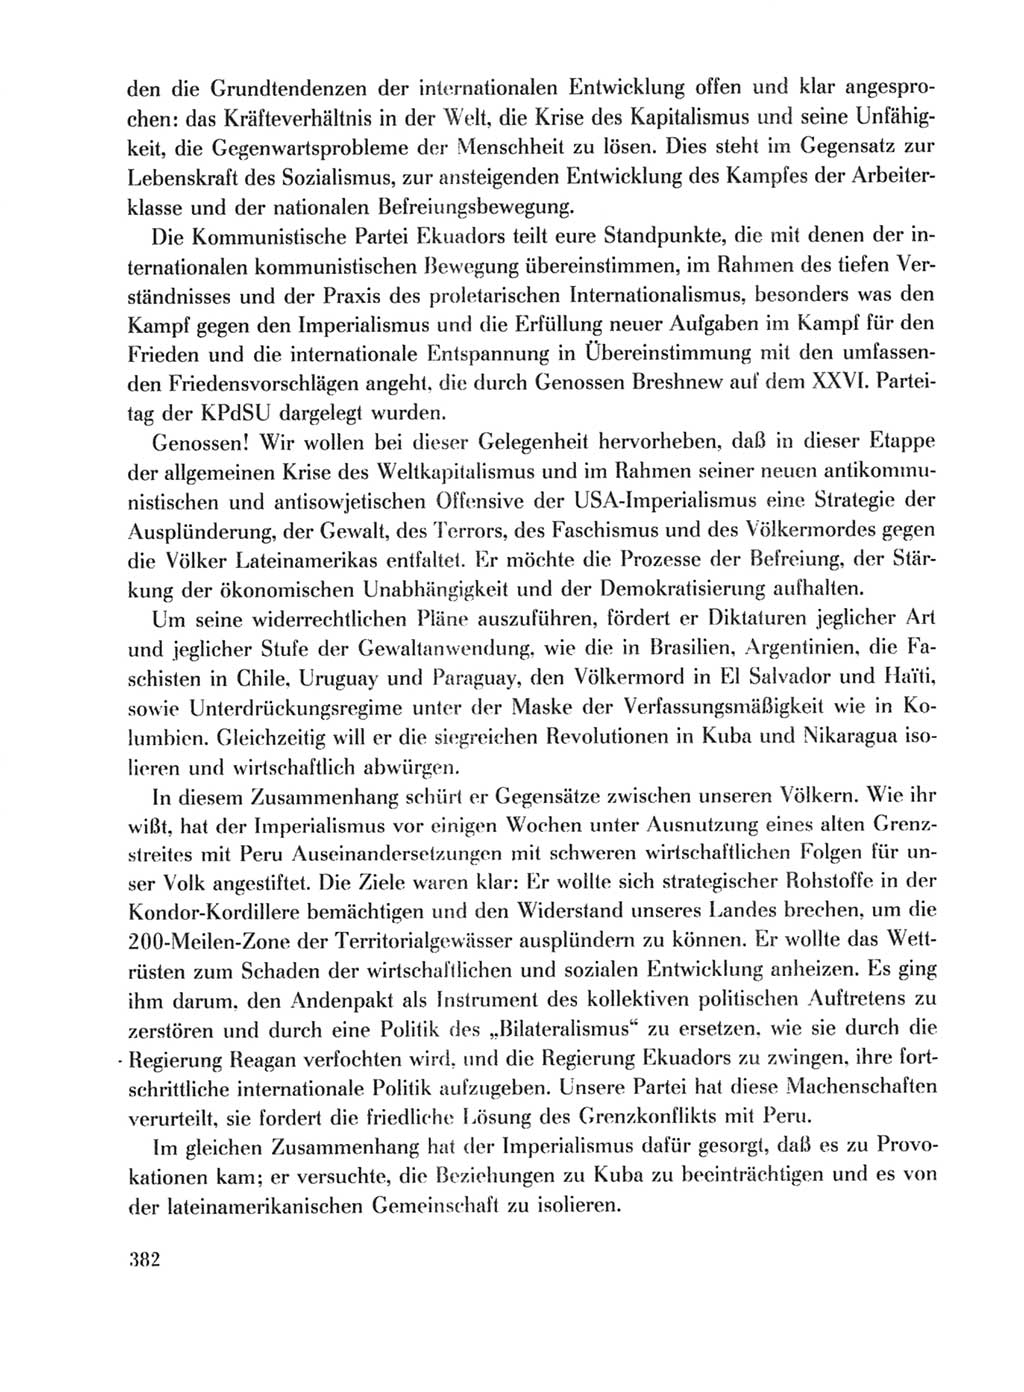 Protokoll der Verhandlungen des Ⅹ. Parteitages der Sozialistischen Einheitspartei Deutschlands (SED) [Deutsche Demokratische Republik (DDR)] 1981, Band 1, Seite 382 (Prot. Verh. Ⅹ. PT SED DDR 1981, Bd. 1, S. 382)